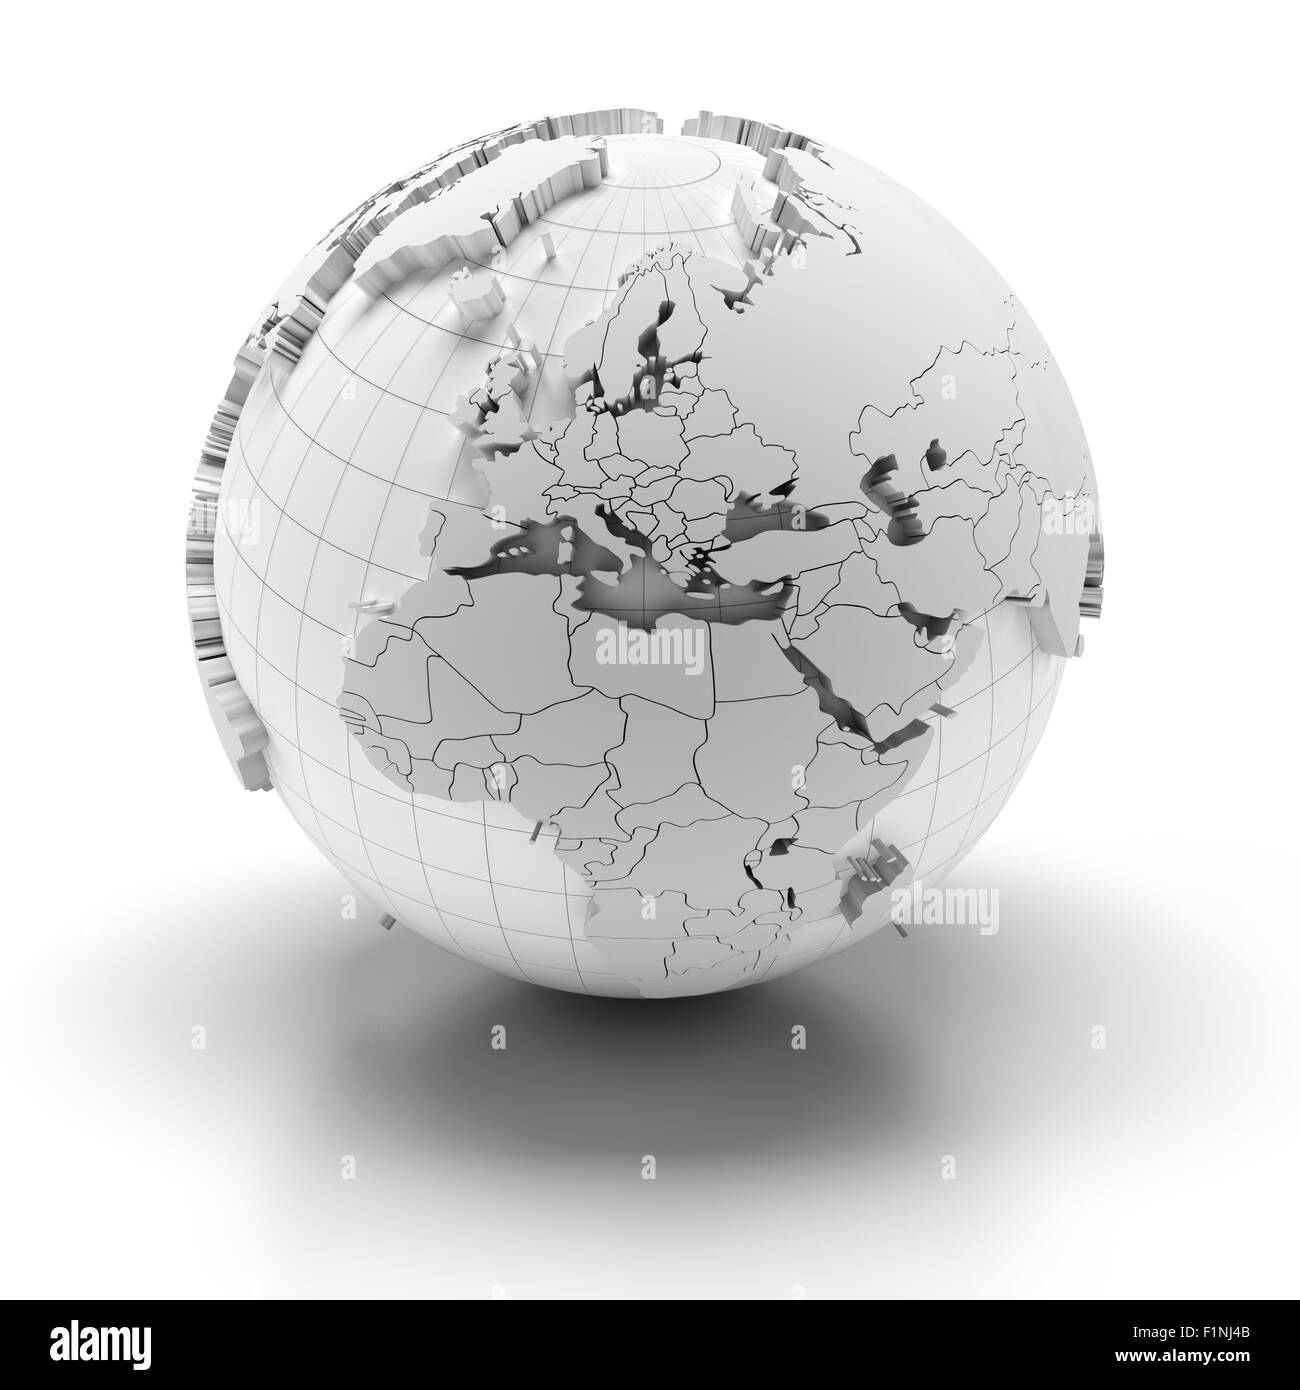 Globus mit extrudierten Kontinenten, Europa, Nahost und Afrika Regionen Stockfoto